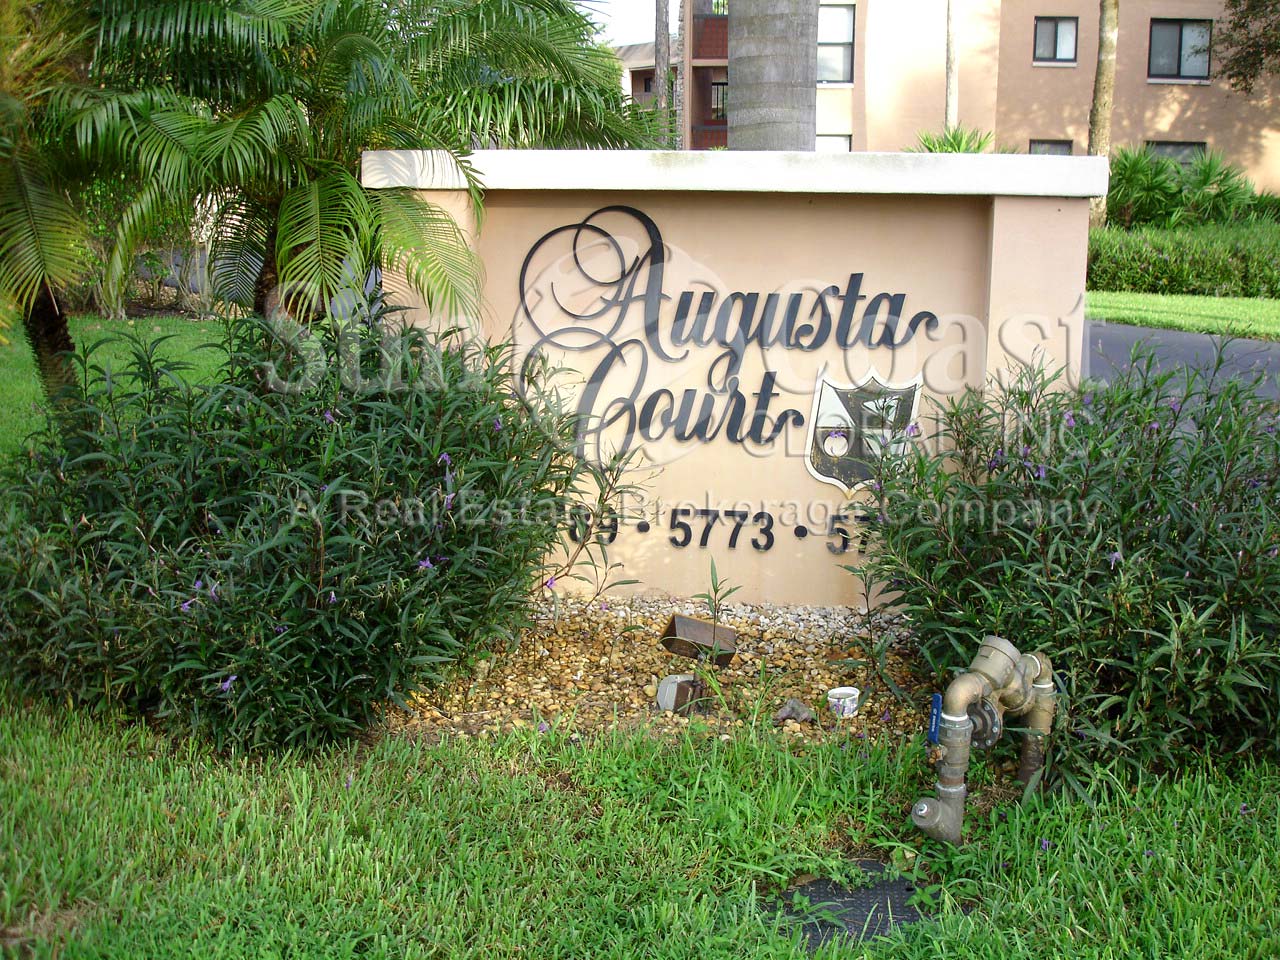 Augusta Court Signage